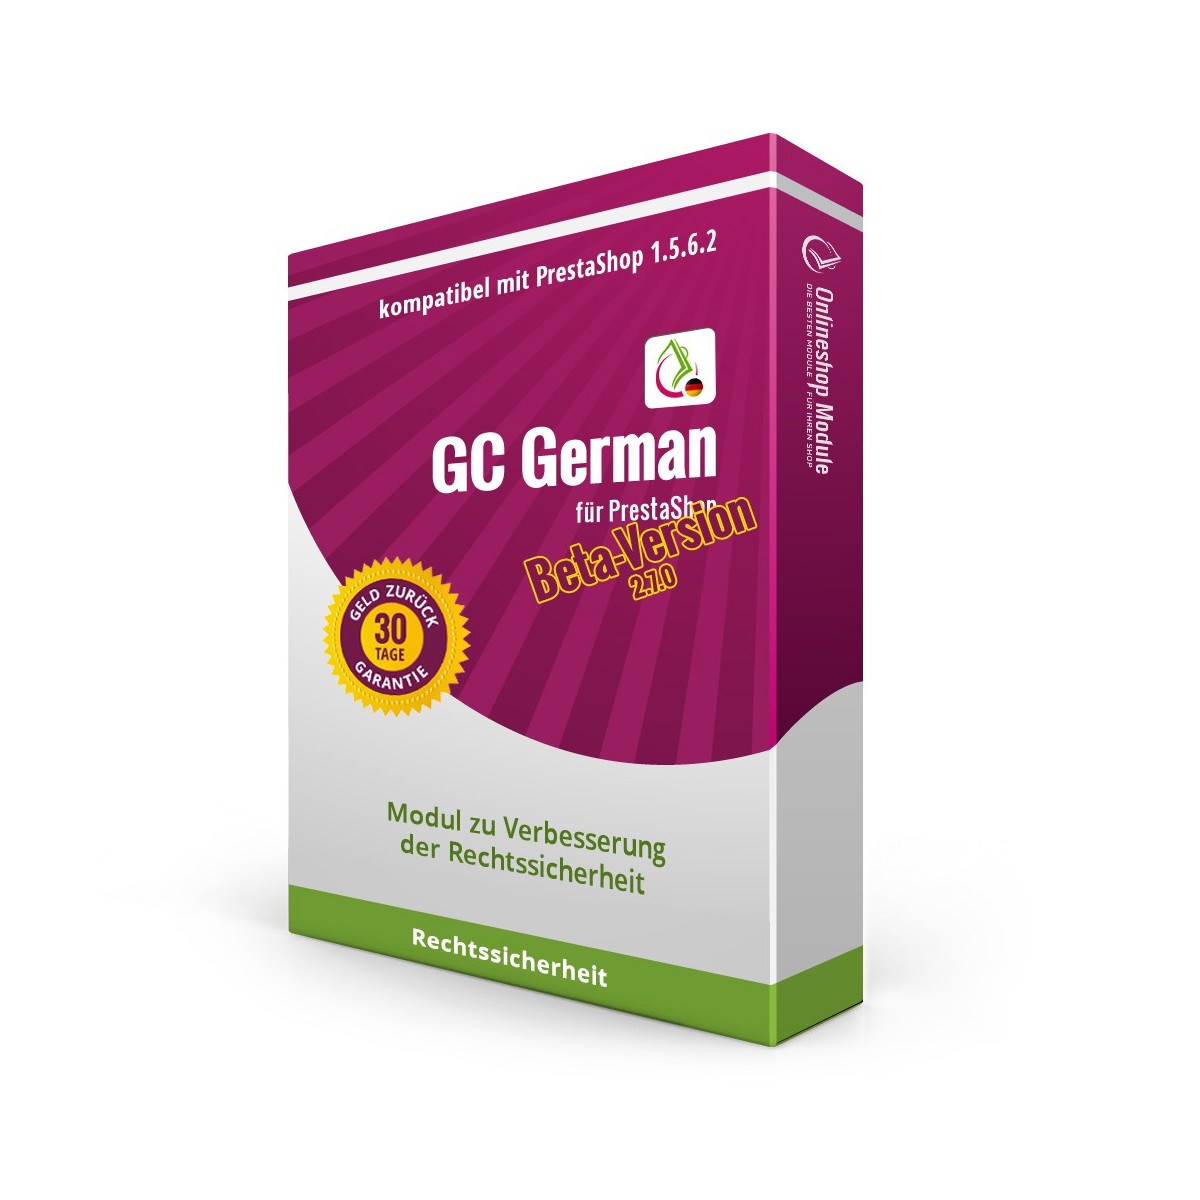 GC German für PrestaShop 1.5.6.2 (Beta-Version, bedingt 1.6.0.5)